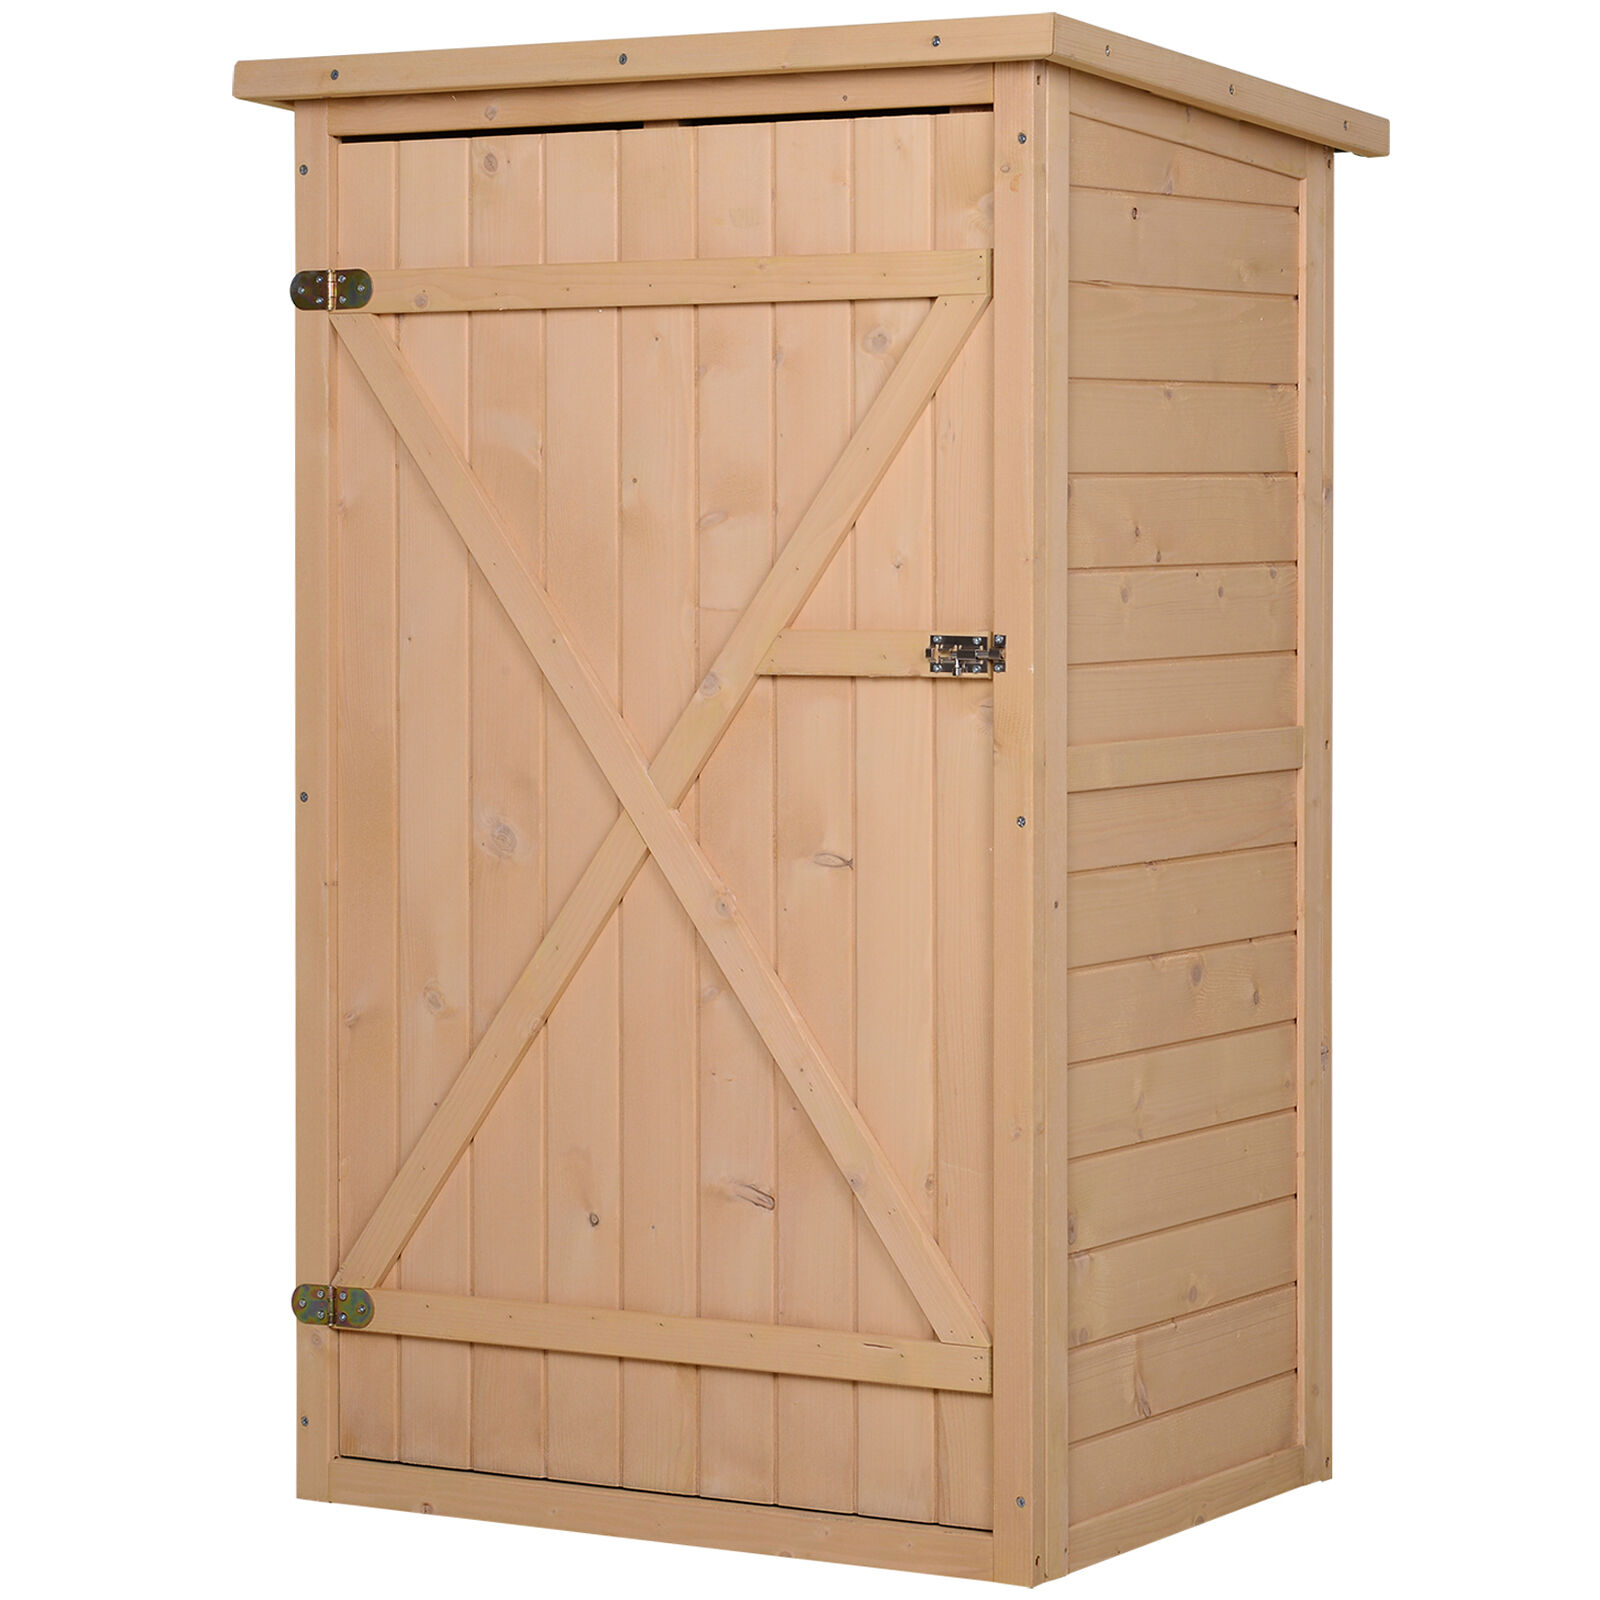 Outsunny Armoire abri de jardin remise pour outils - grande porte verrouillable loquet - 2 étagères - toit bitumé incliné bois de sapin pré-huilé